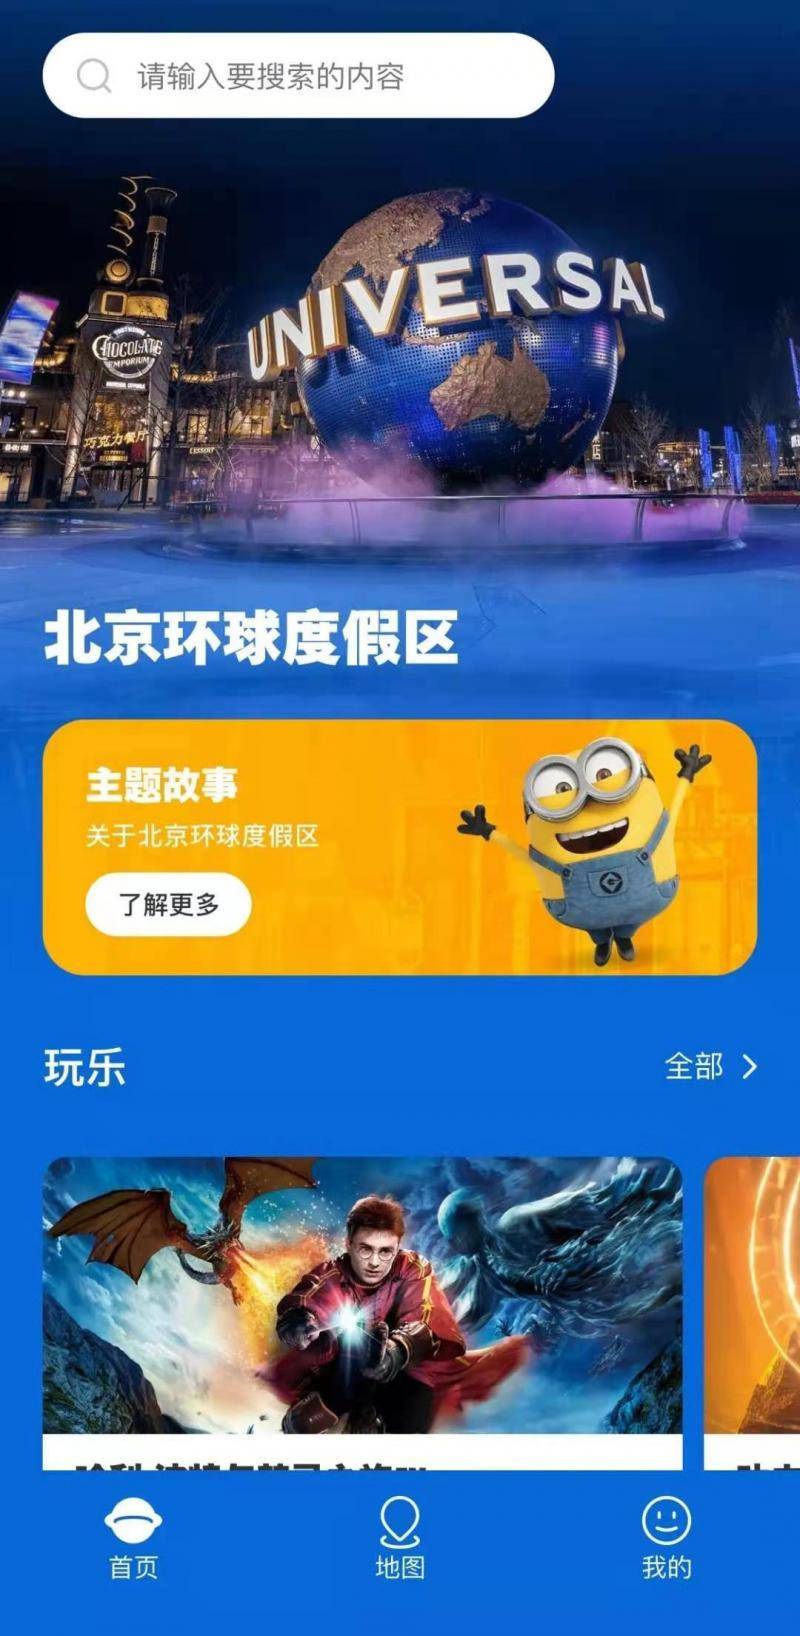 魔法世界|北京环球度假区游玩地图上线 环球主题公园预计5月开园